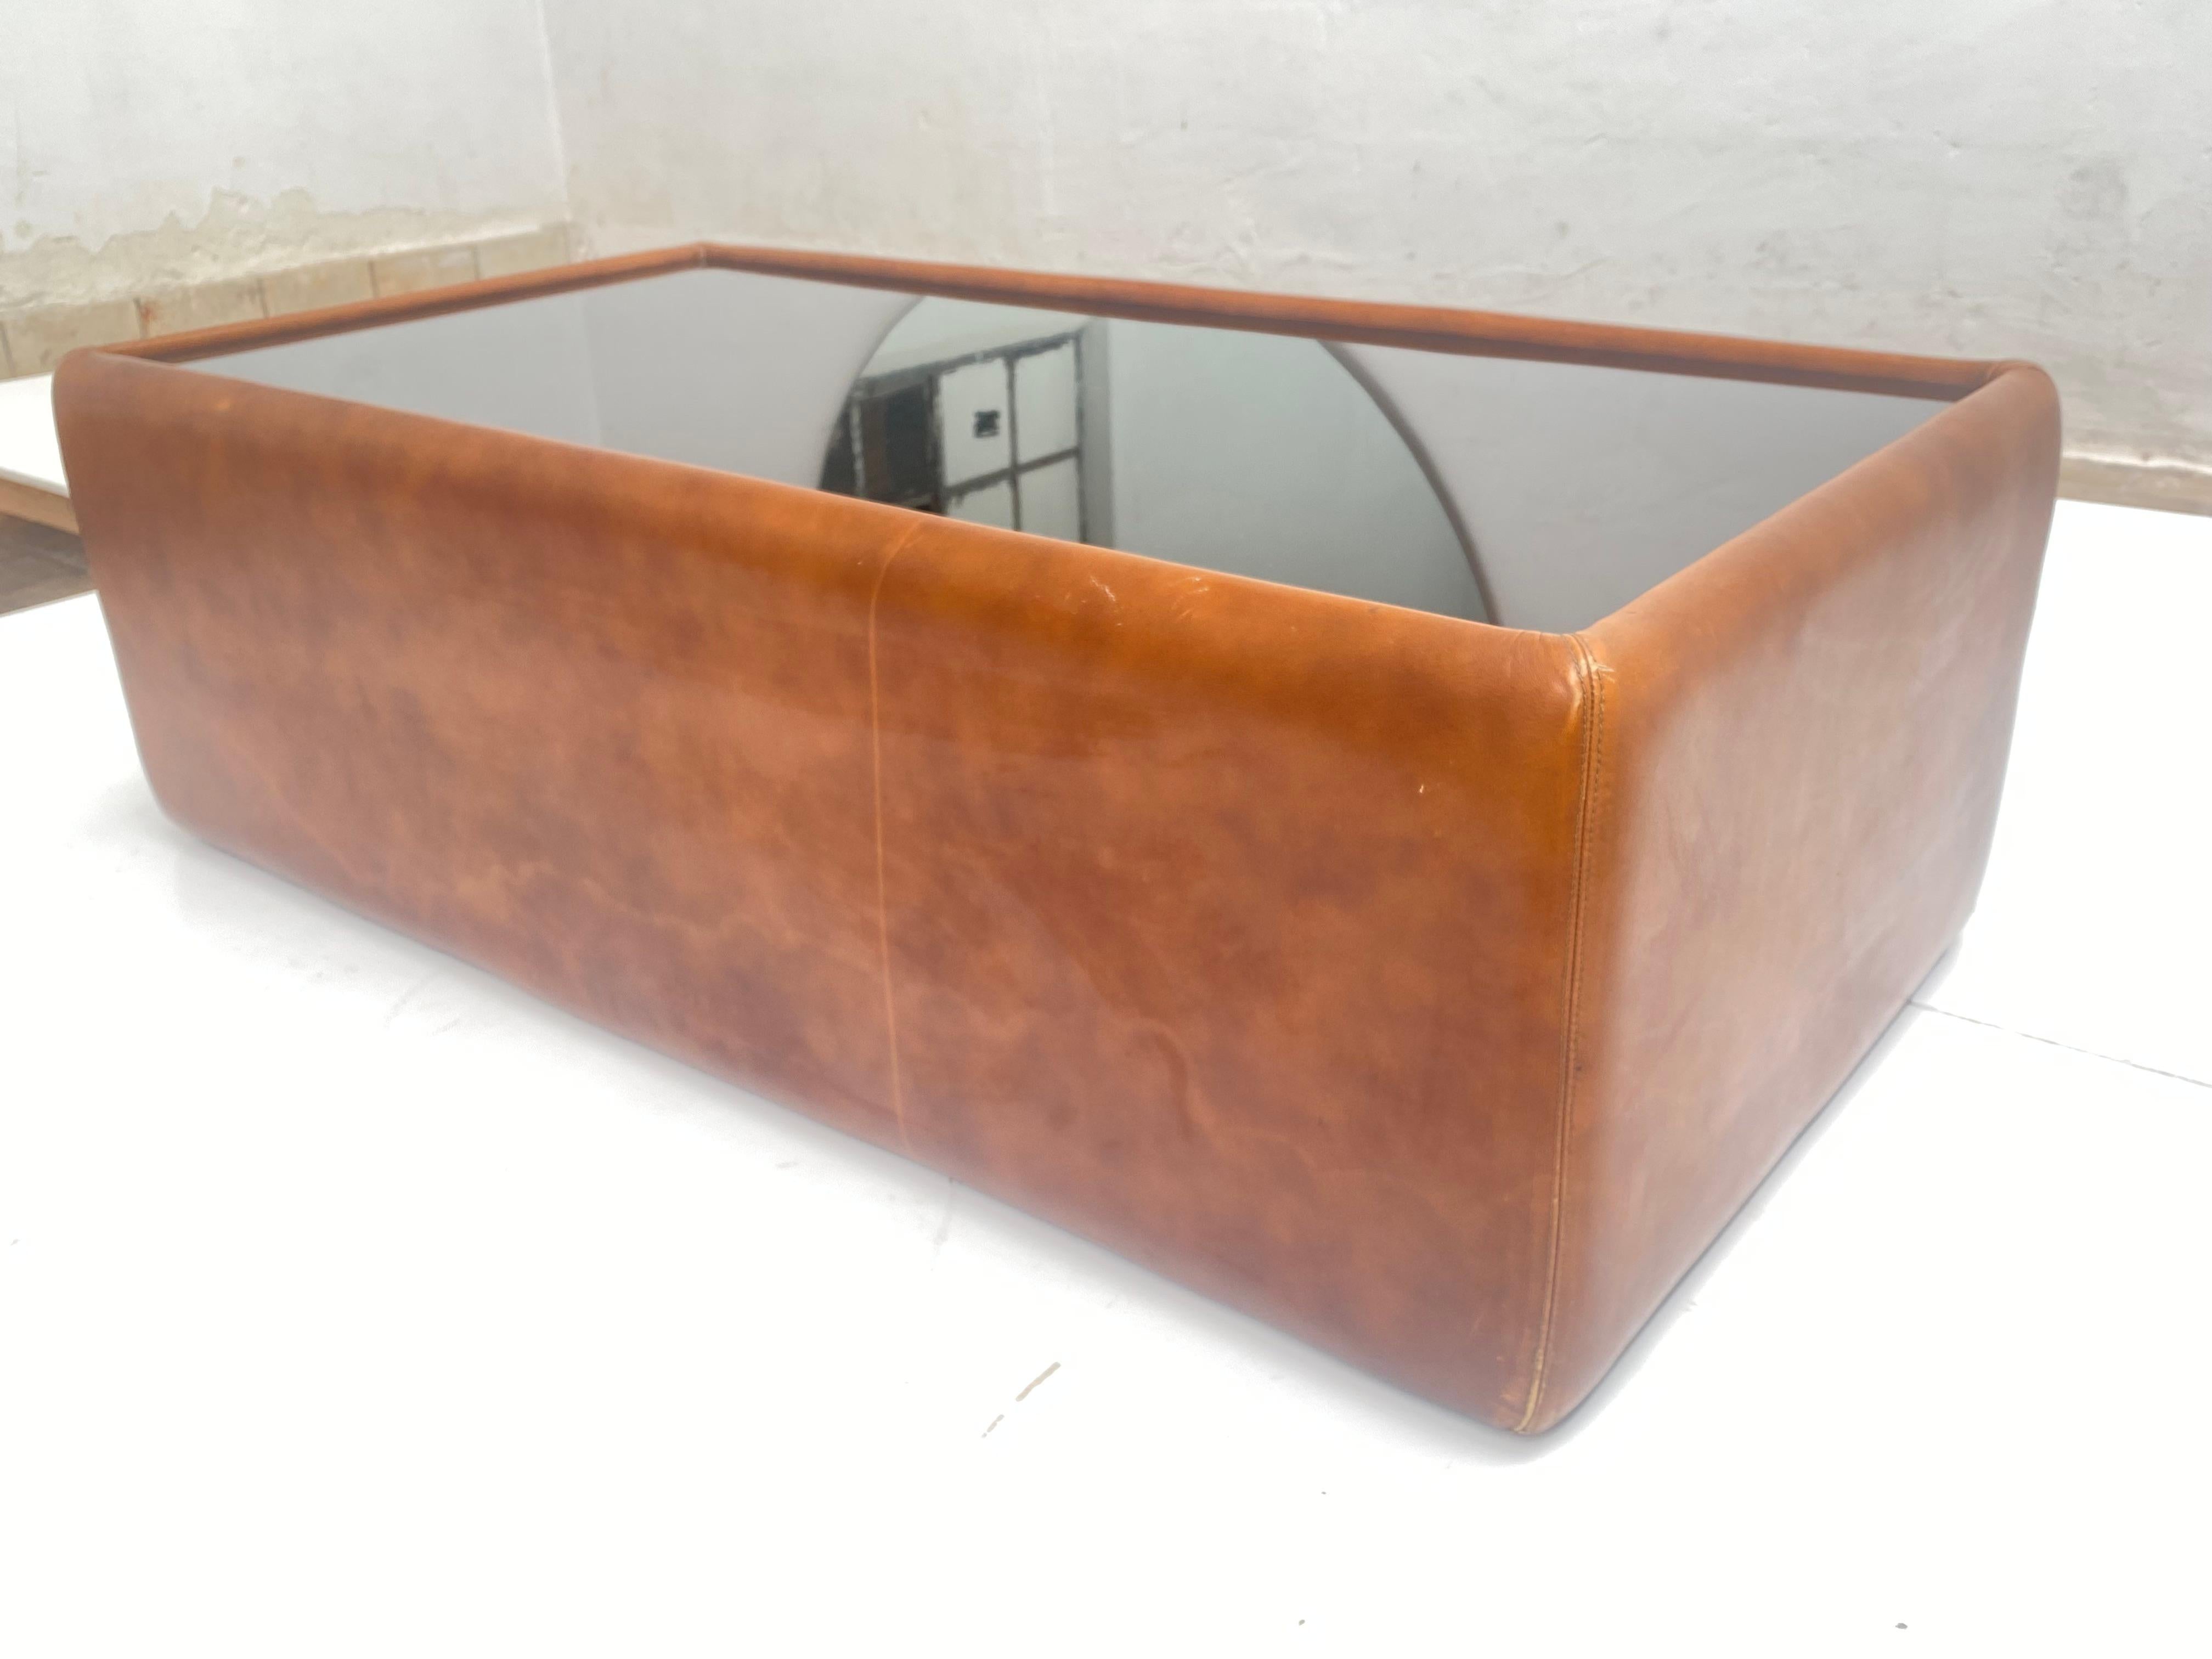 Superbe table basse en cuir et verre fumé foncé des années 1970 dans le style de Sede

Cette table provient d'Italie

Cuir joliment patiné et pièce bien fabriquée